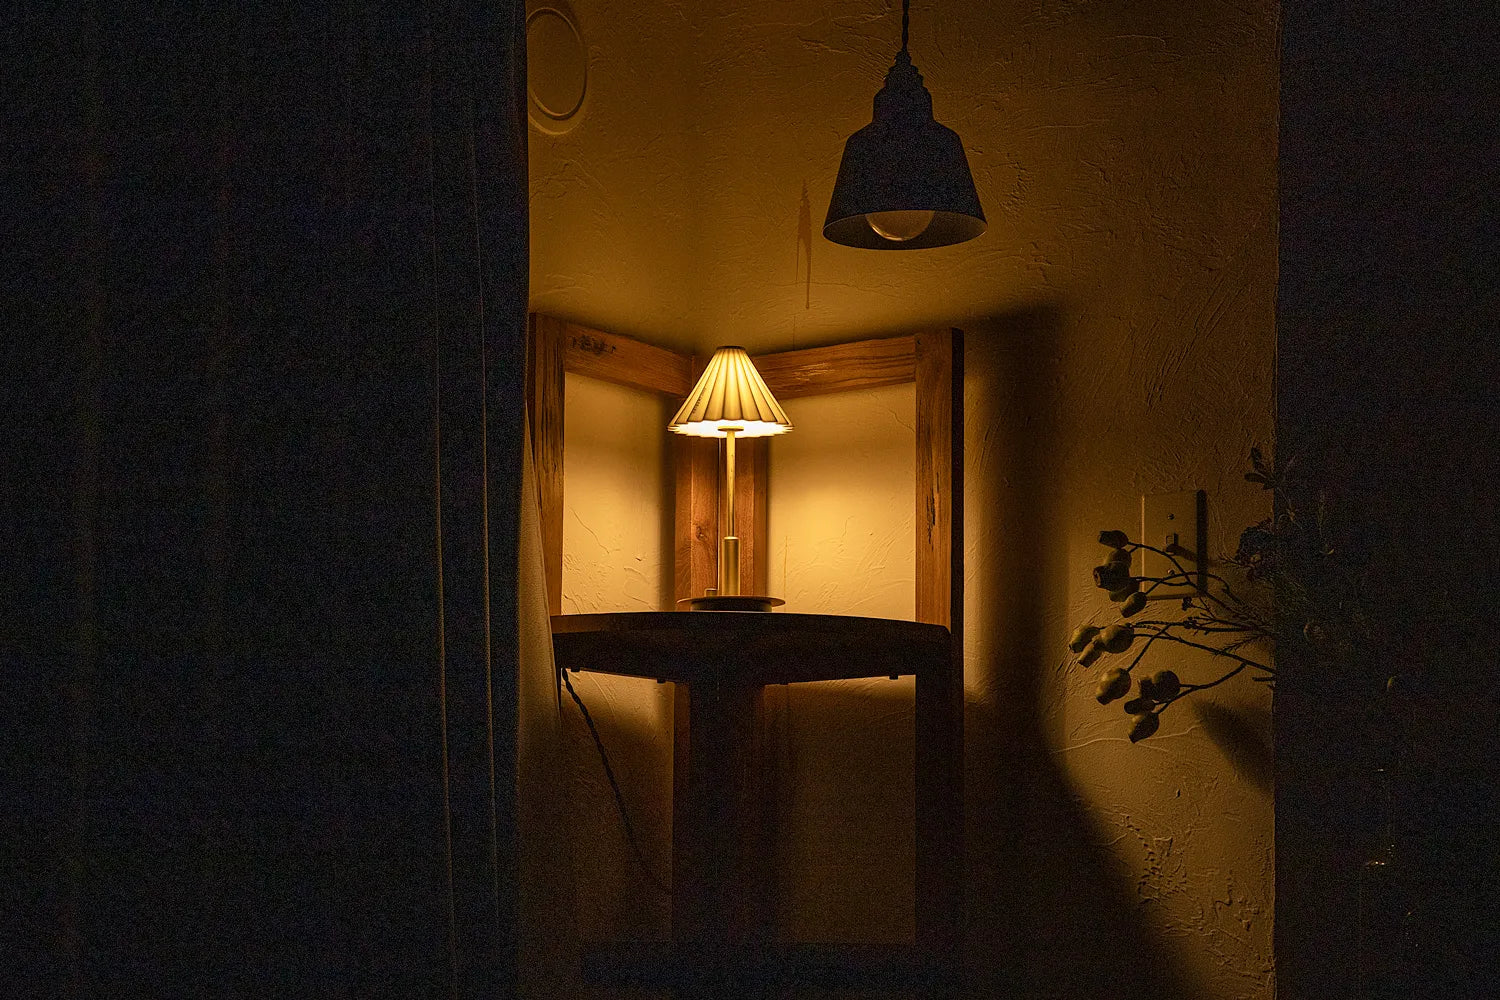 ポータブルライト ORIGAMI LAMP コッパー